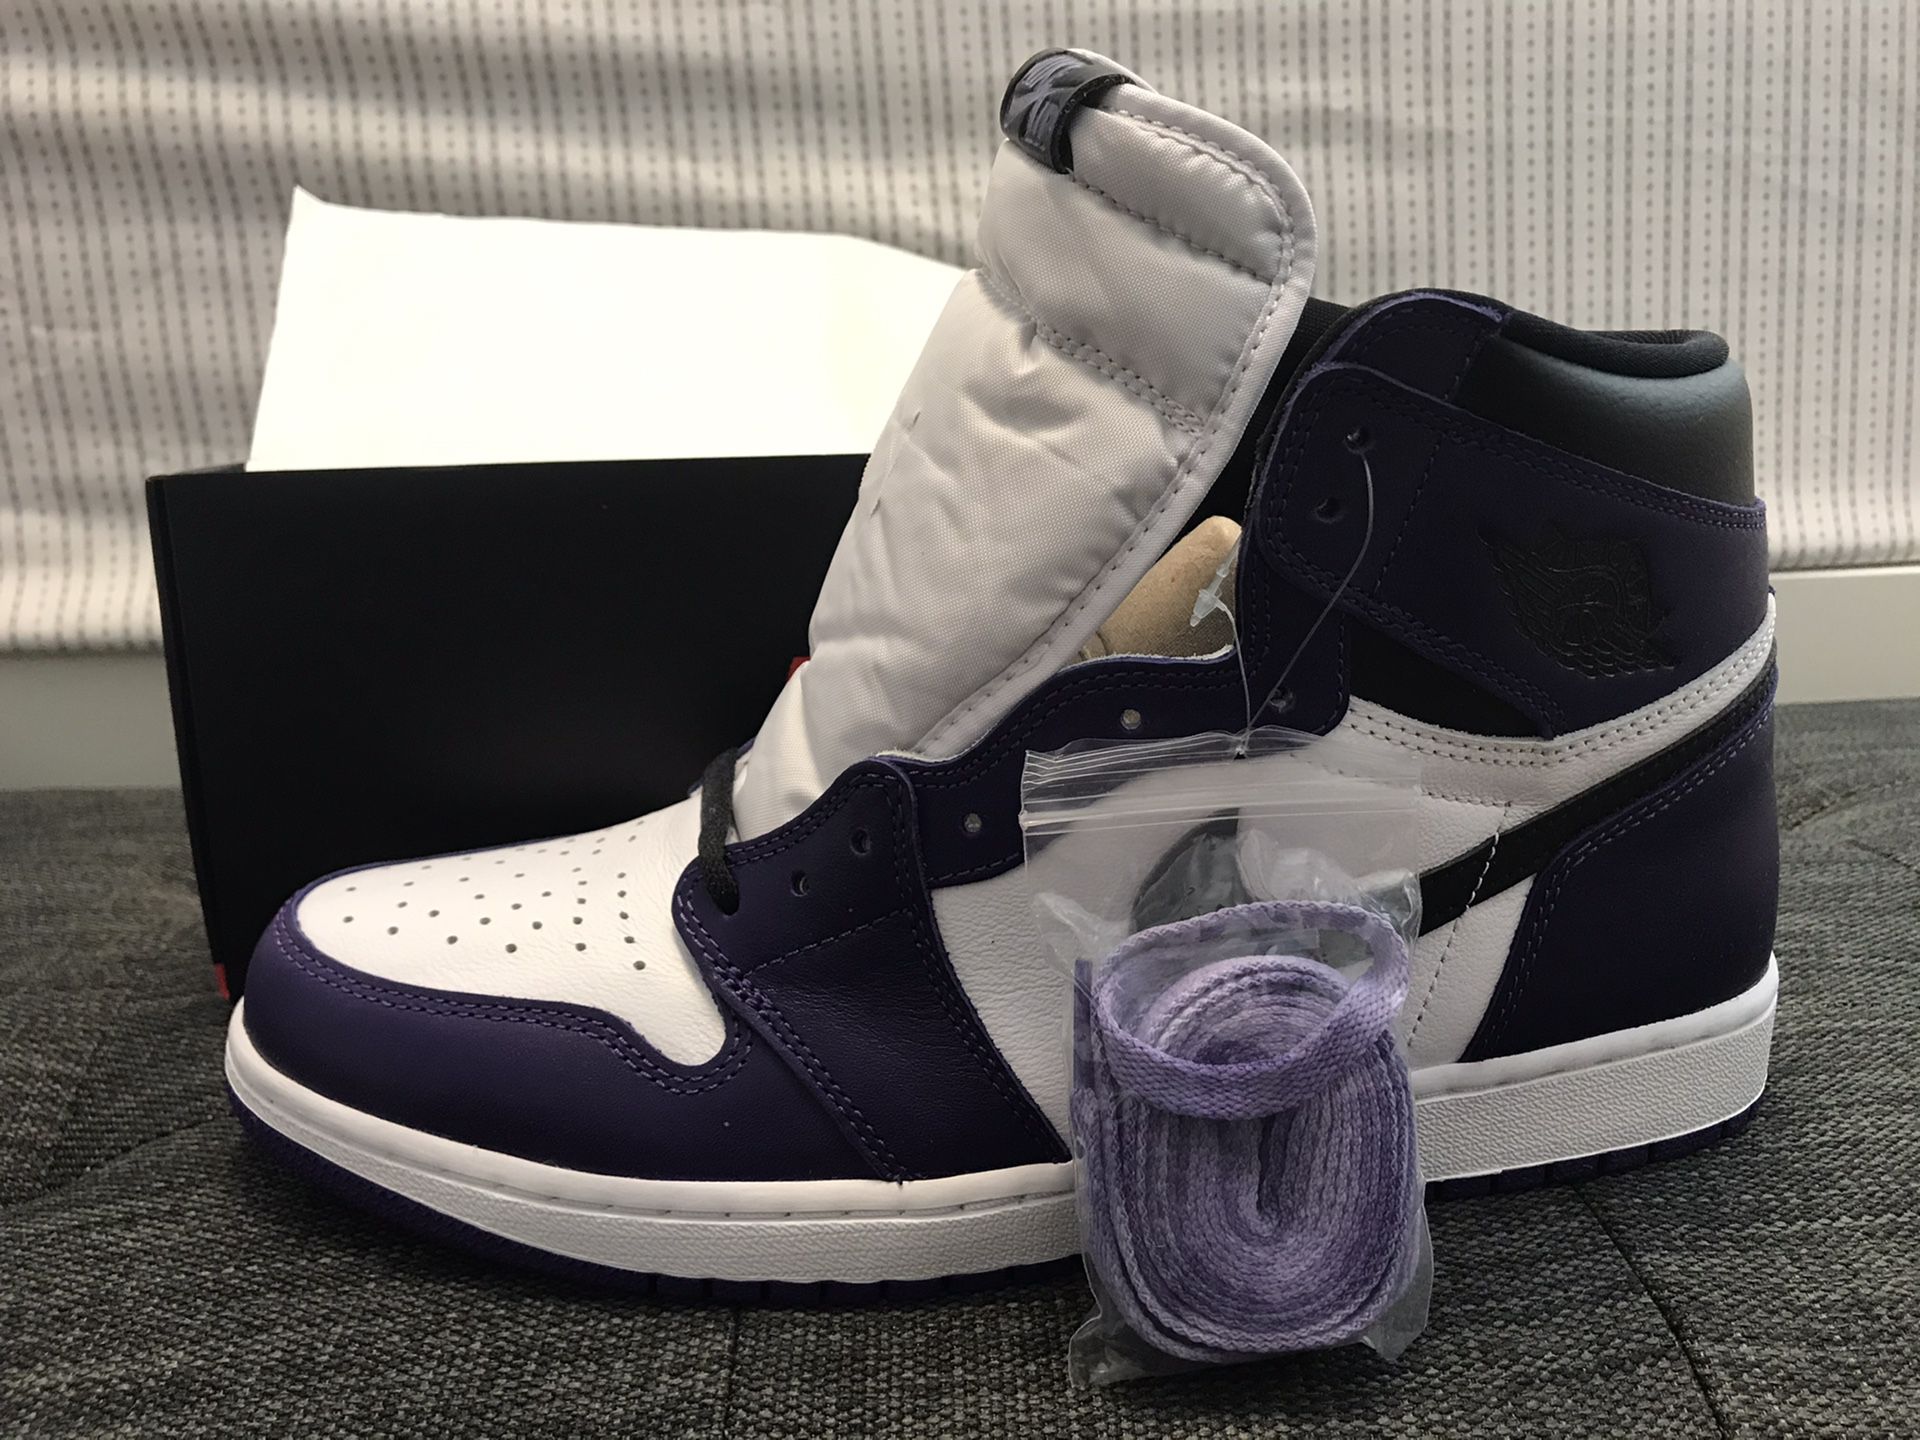 Jordan 1 High OG Court Purple 2.0 (2020) Size 11.5 Men’s